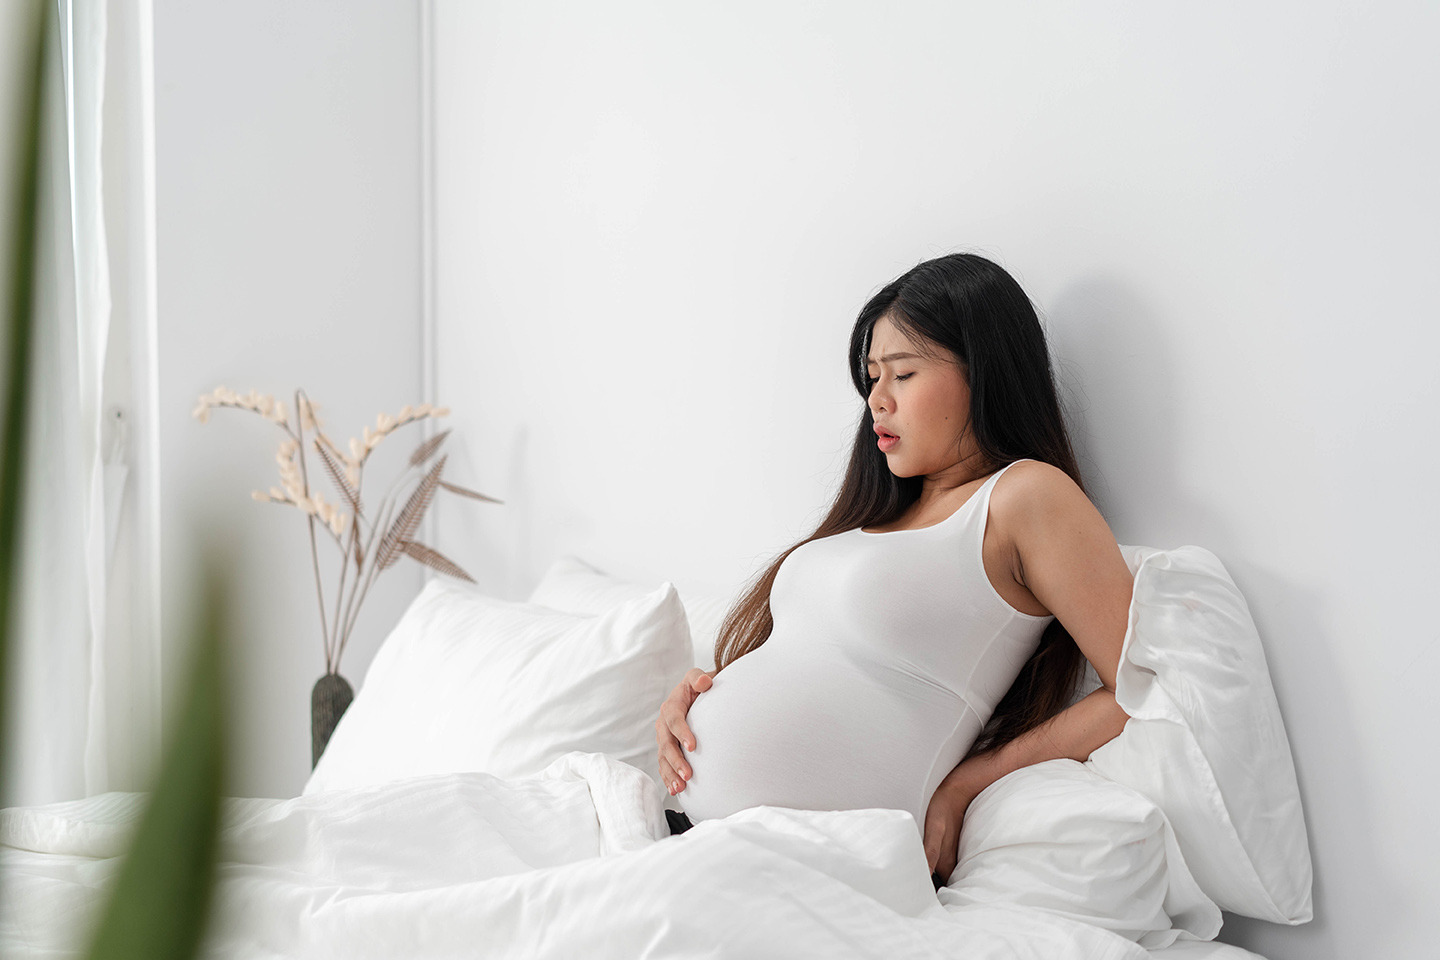 Diese Gesundheitsstörung tritt häufig bei schwangeren Frauen im ersten Trimester auf